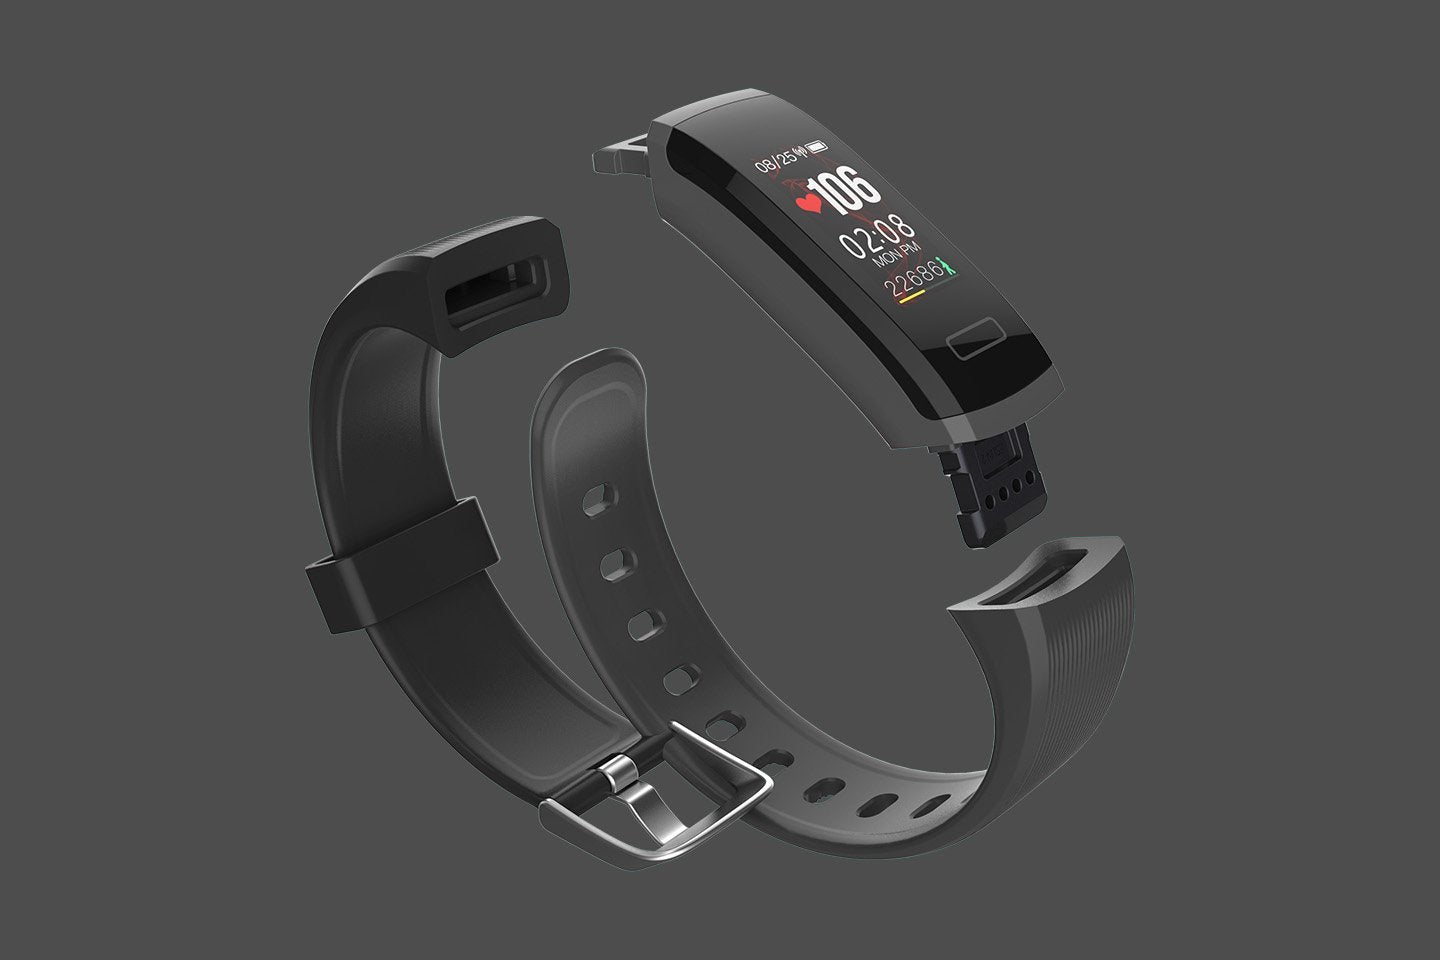 OAXIS Fitness Tracker Smart tech - smart watch phone for kids with GPS Tracker, fitness trackers